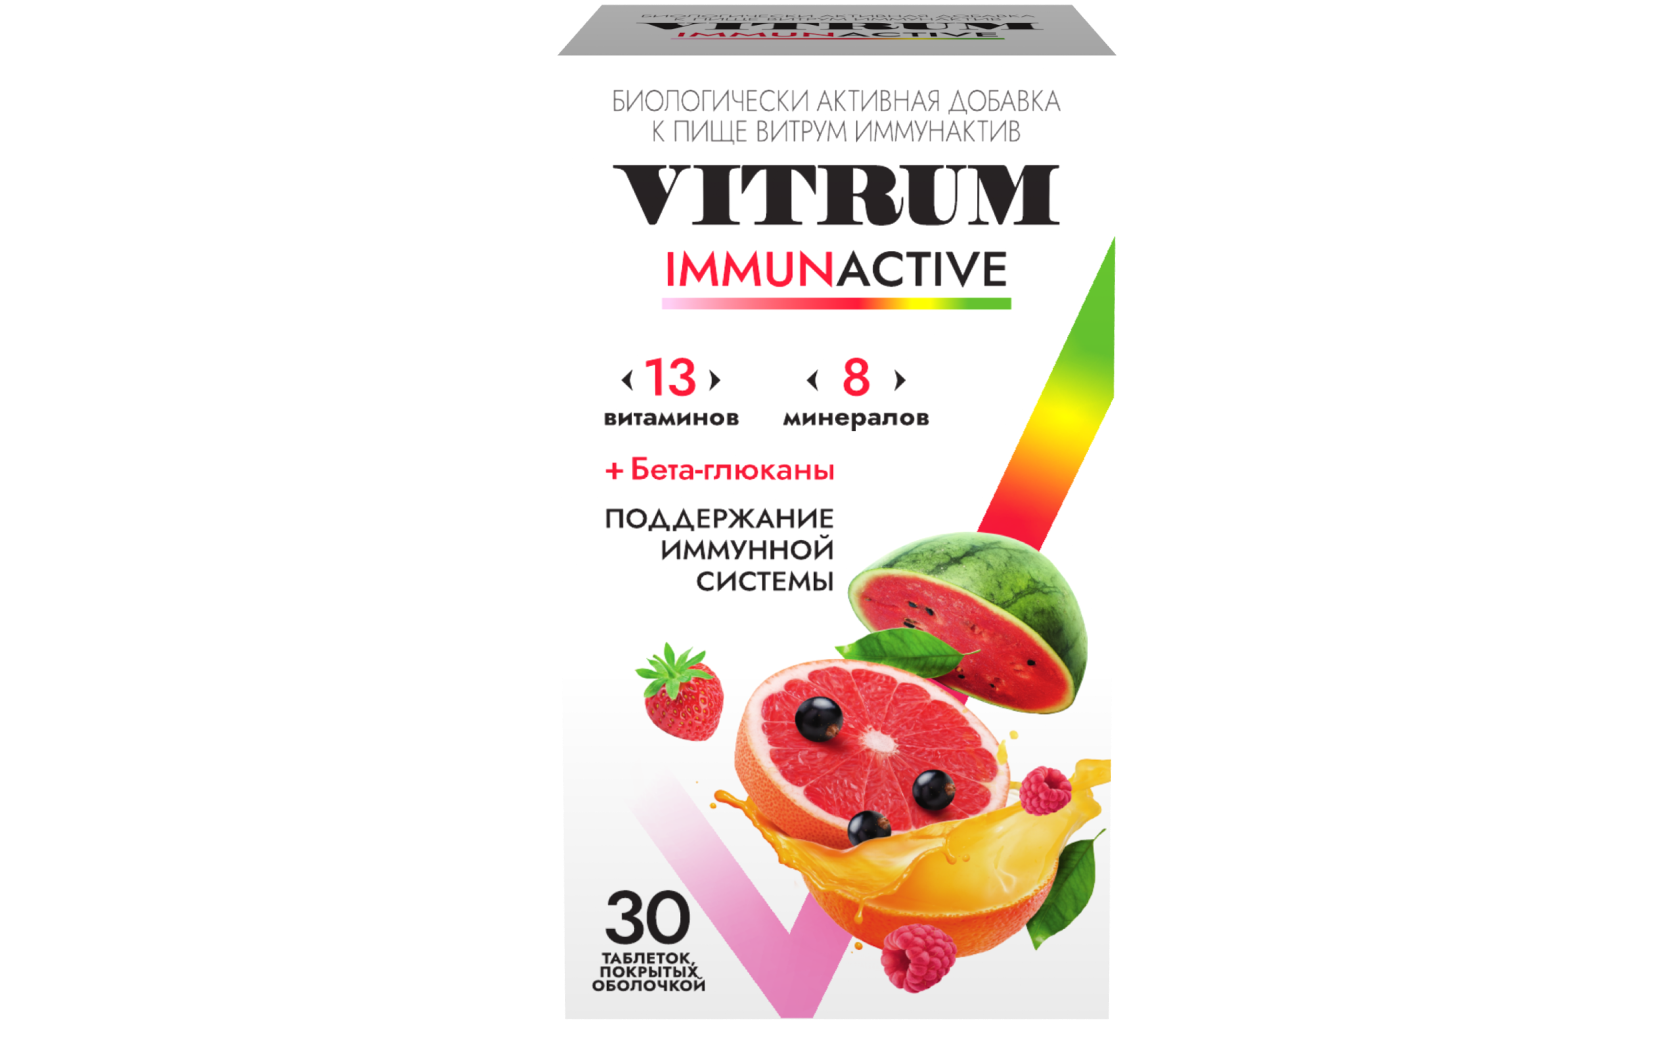 Витрум® Иммунактив 30 таблеток: фото упаковки, действующее вещество, подробная инструкция по применению